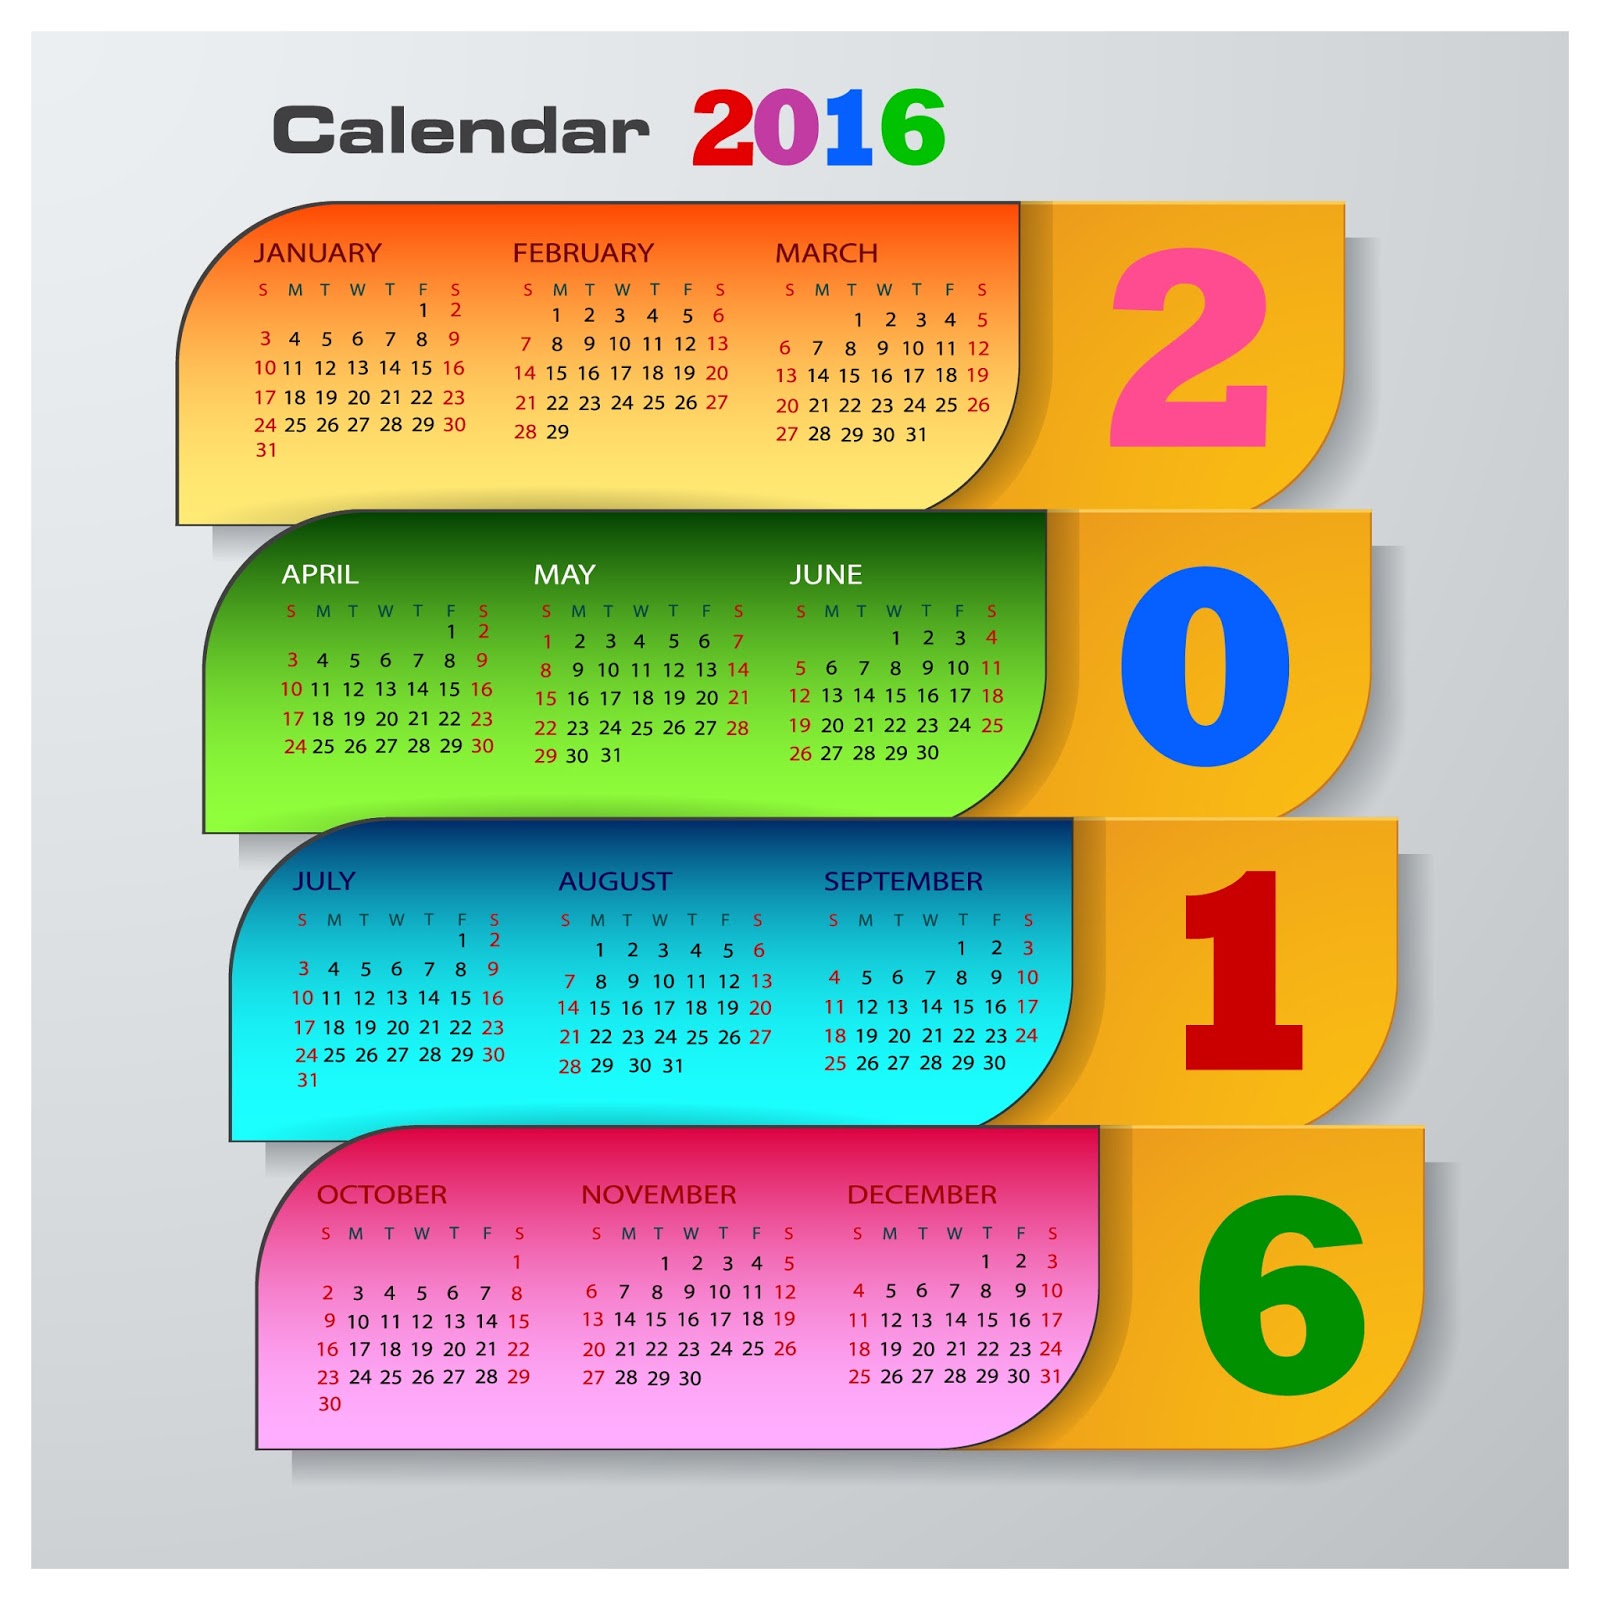 calendar 2016 design a calendar for 2016 calendar 2016 printable the 2016 calendar year the calendar for 2016 the 2016 calendar year non monthly calendar 2016 4 month